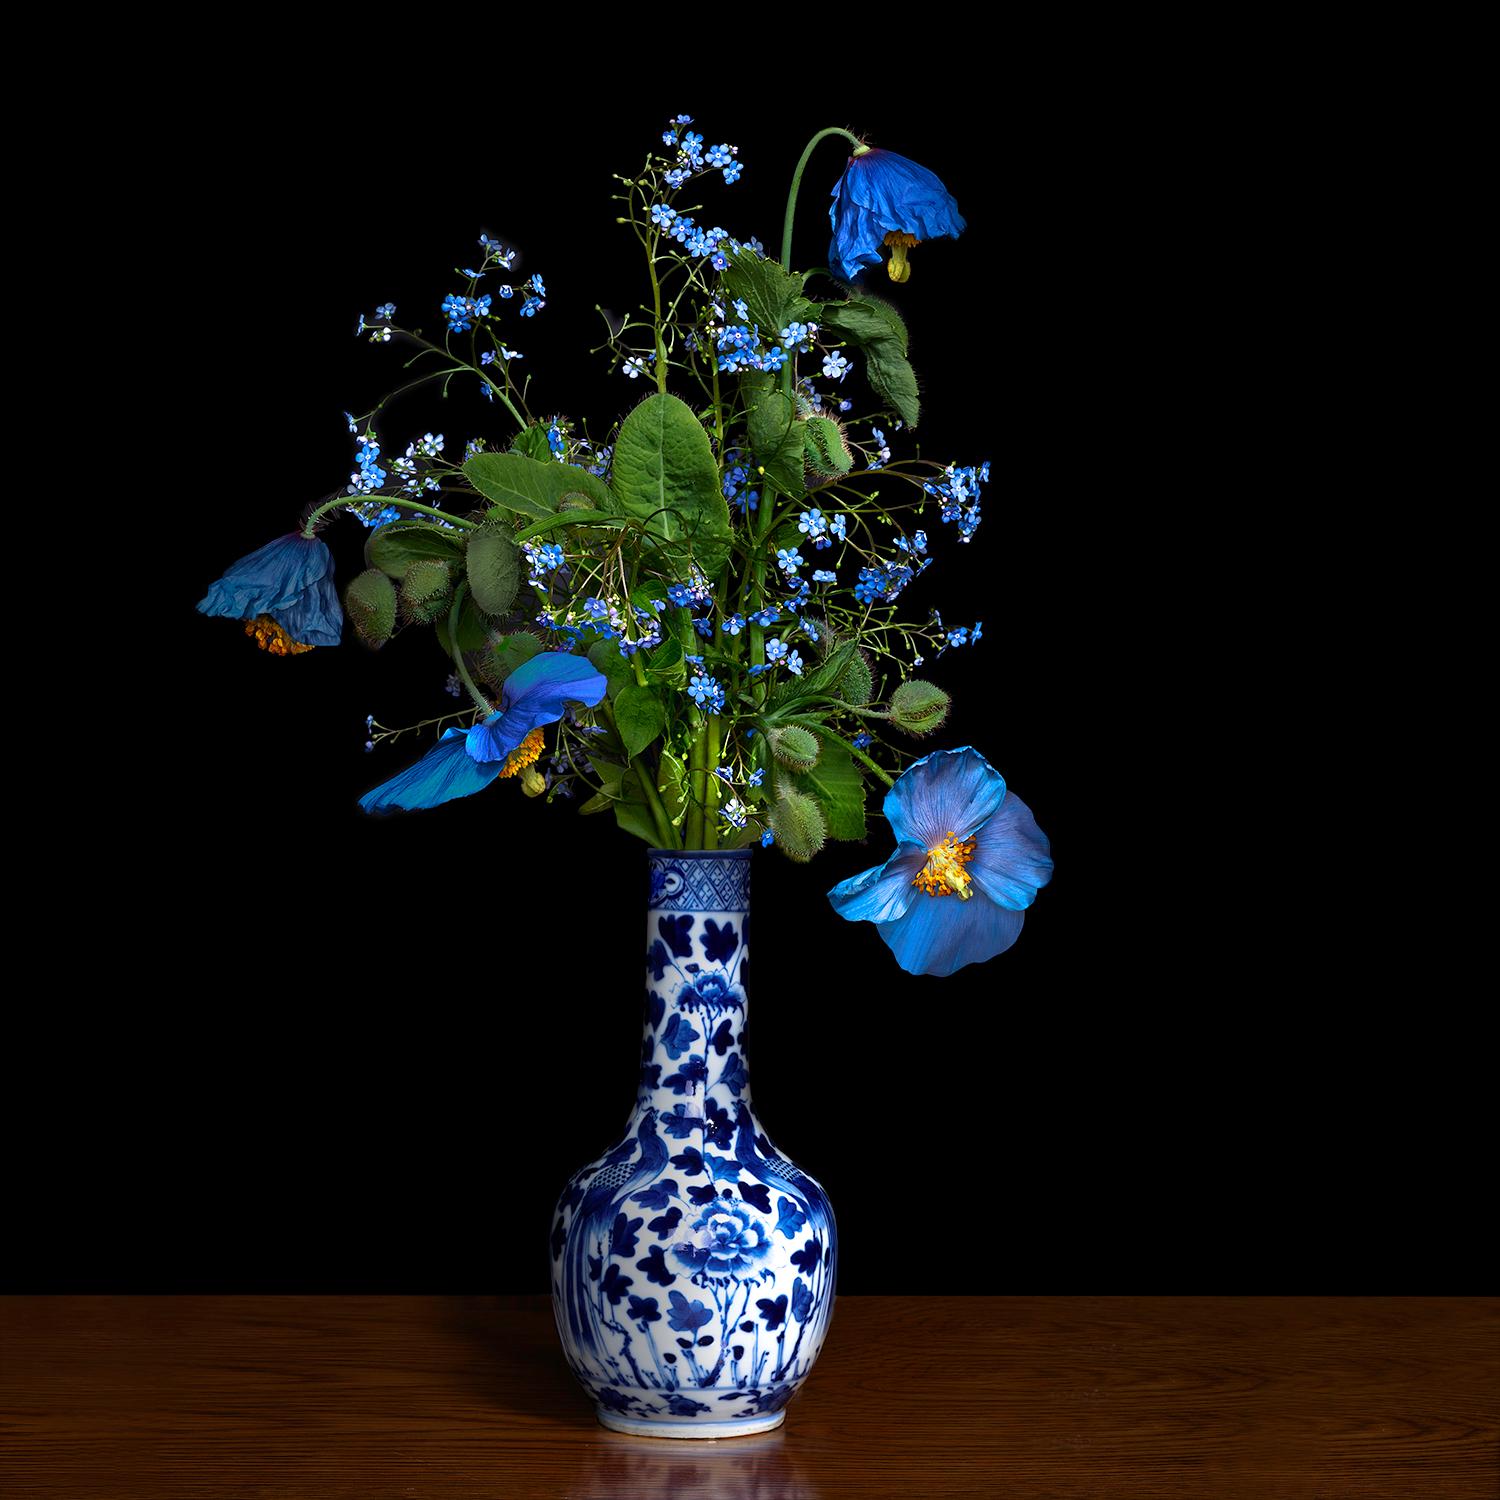 T.M. Glass Still-Life Photograph – Blauer Mohn in einer blauen und weißen chinesischen Vase